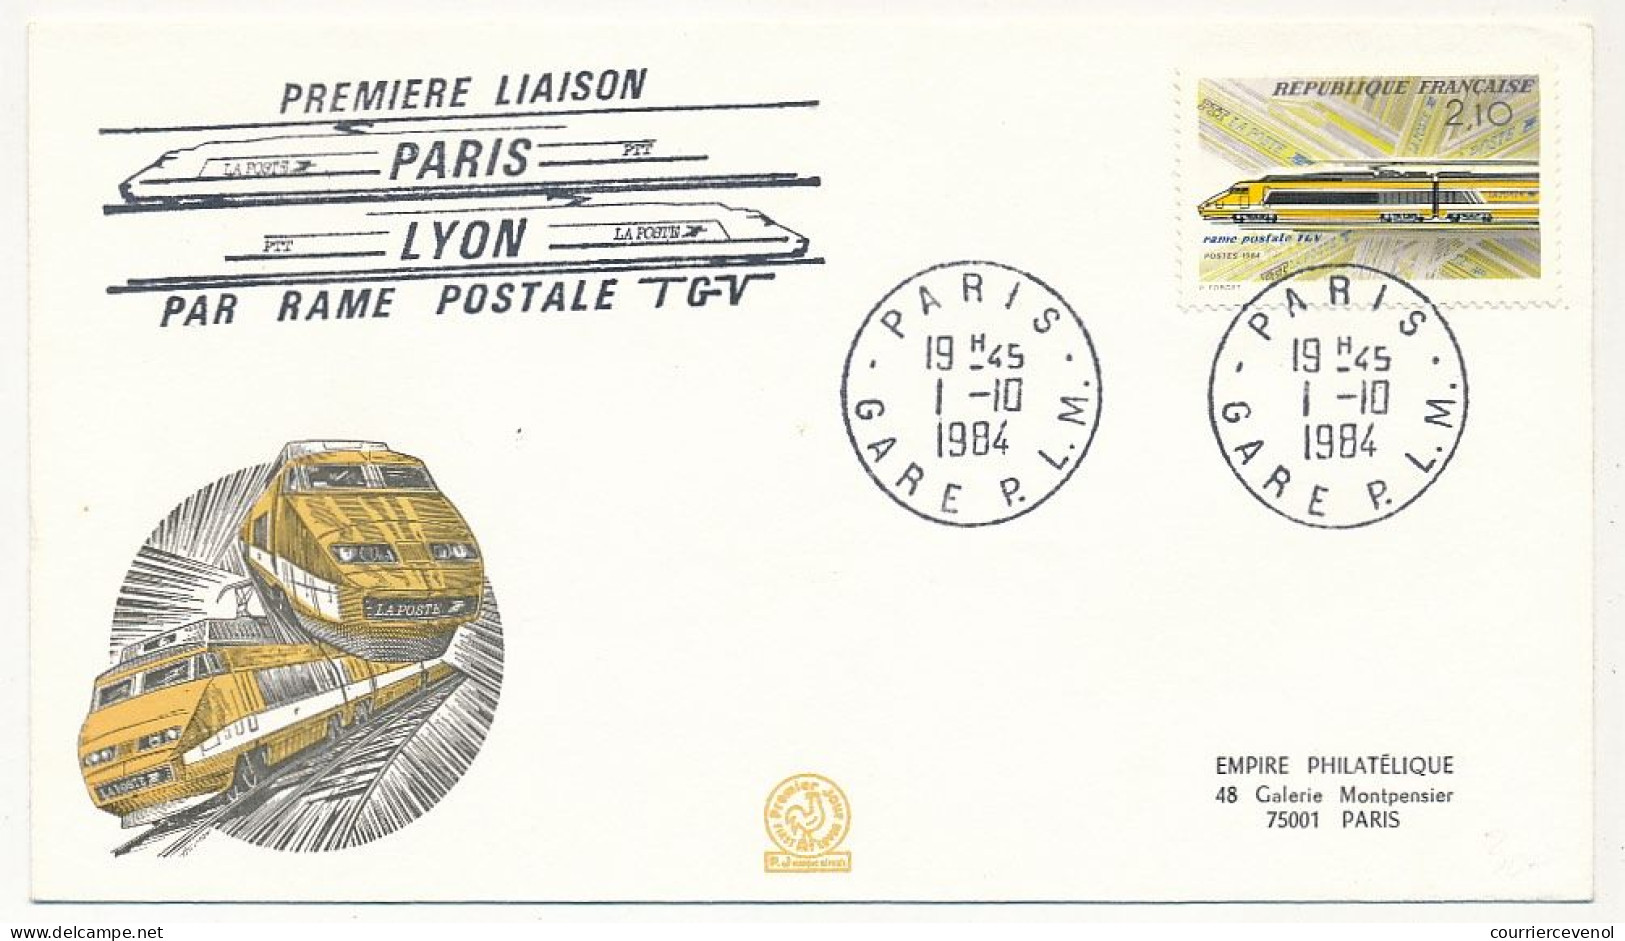 FRANCE - Env Illustrée 2,10 TGV Postal - Première Liaison Paris Lyon Par Rame Postale TGV - 1/10/1984 - Trains